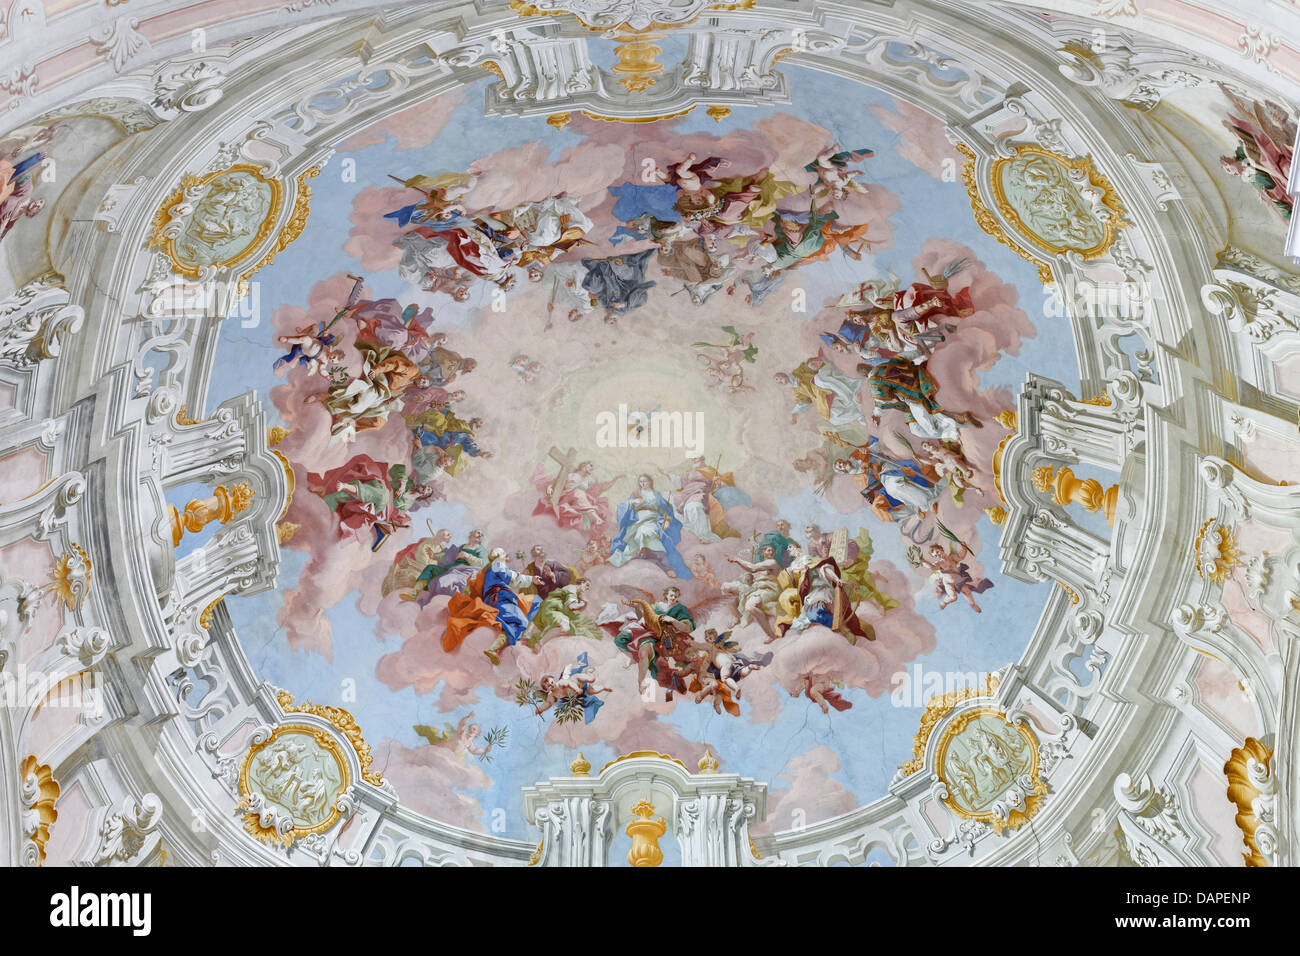 Austria, Upper Austria, Interior of Collegiate Church with frescos Stock Photo